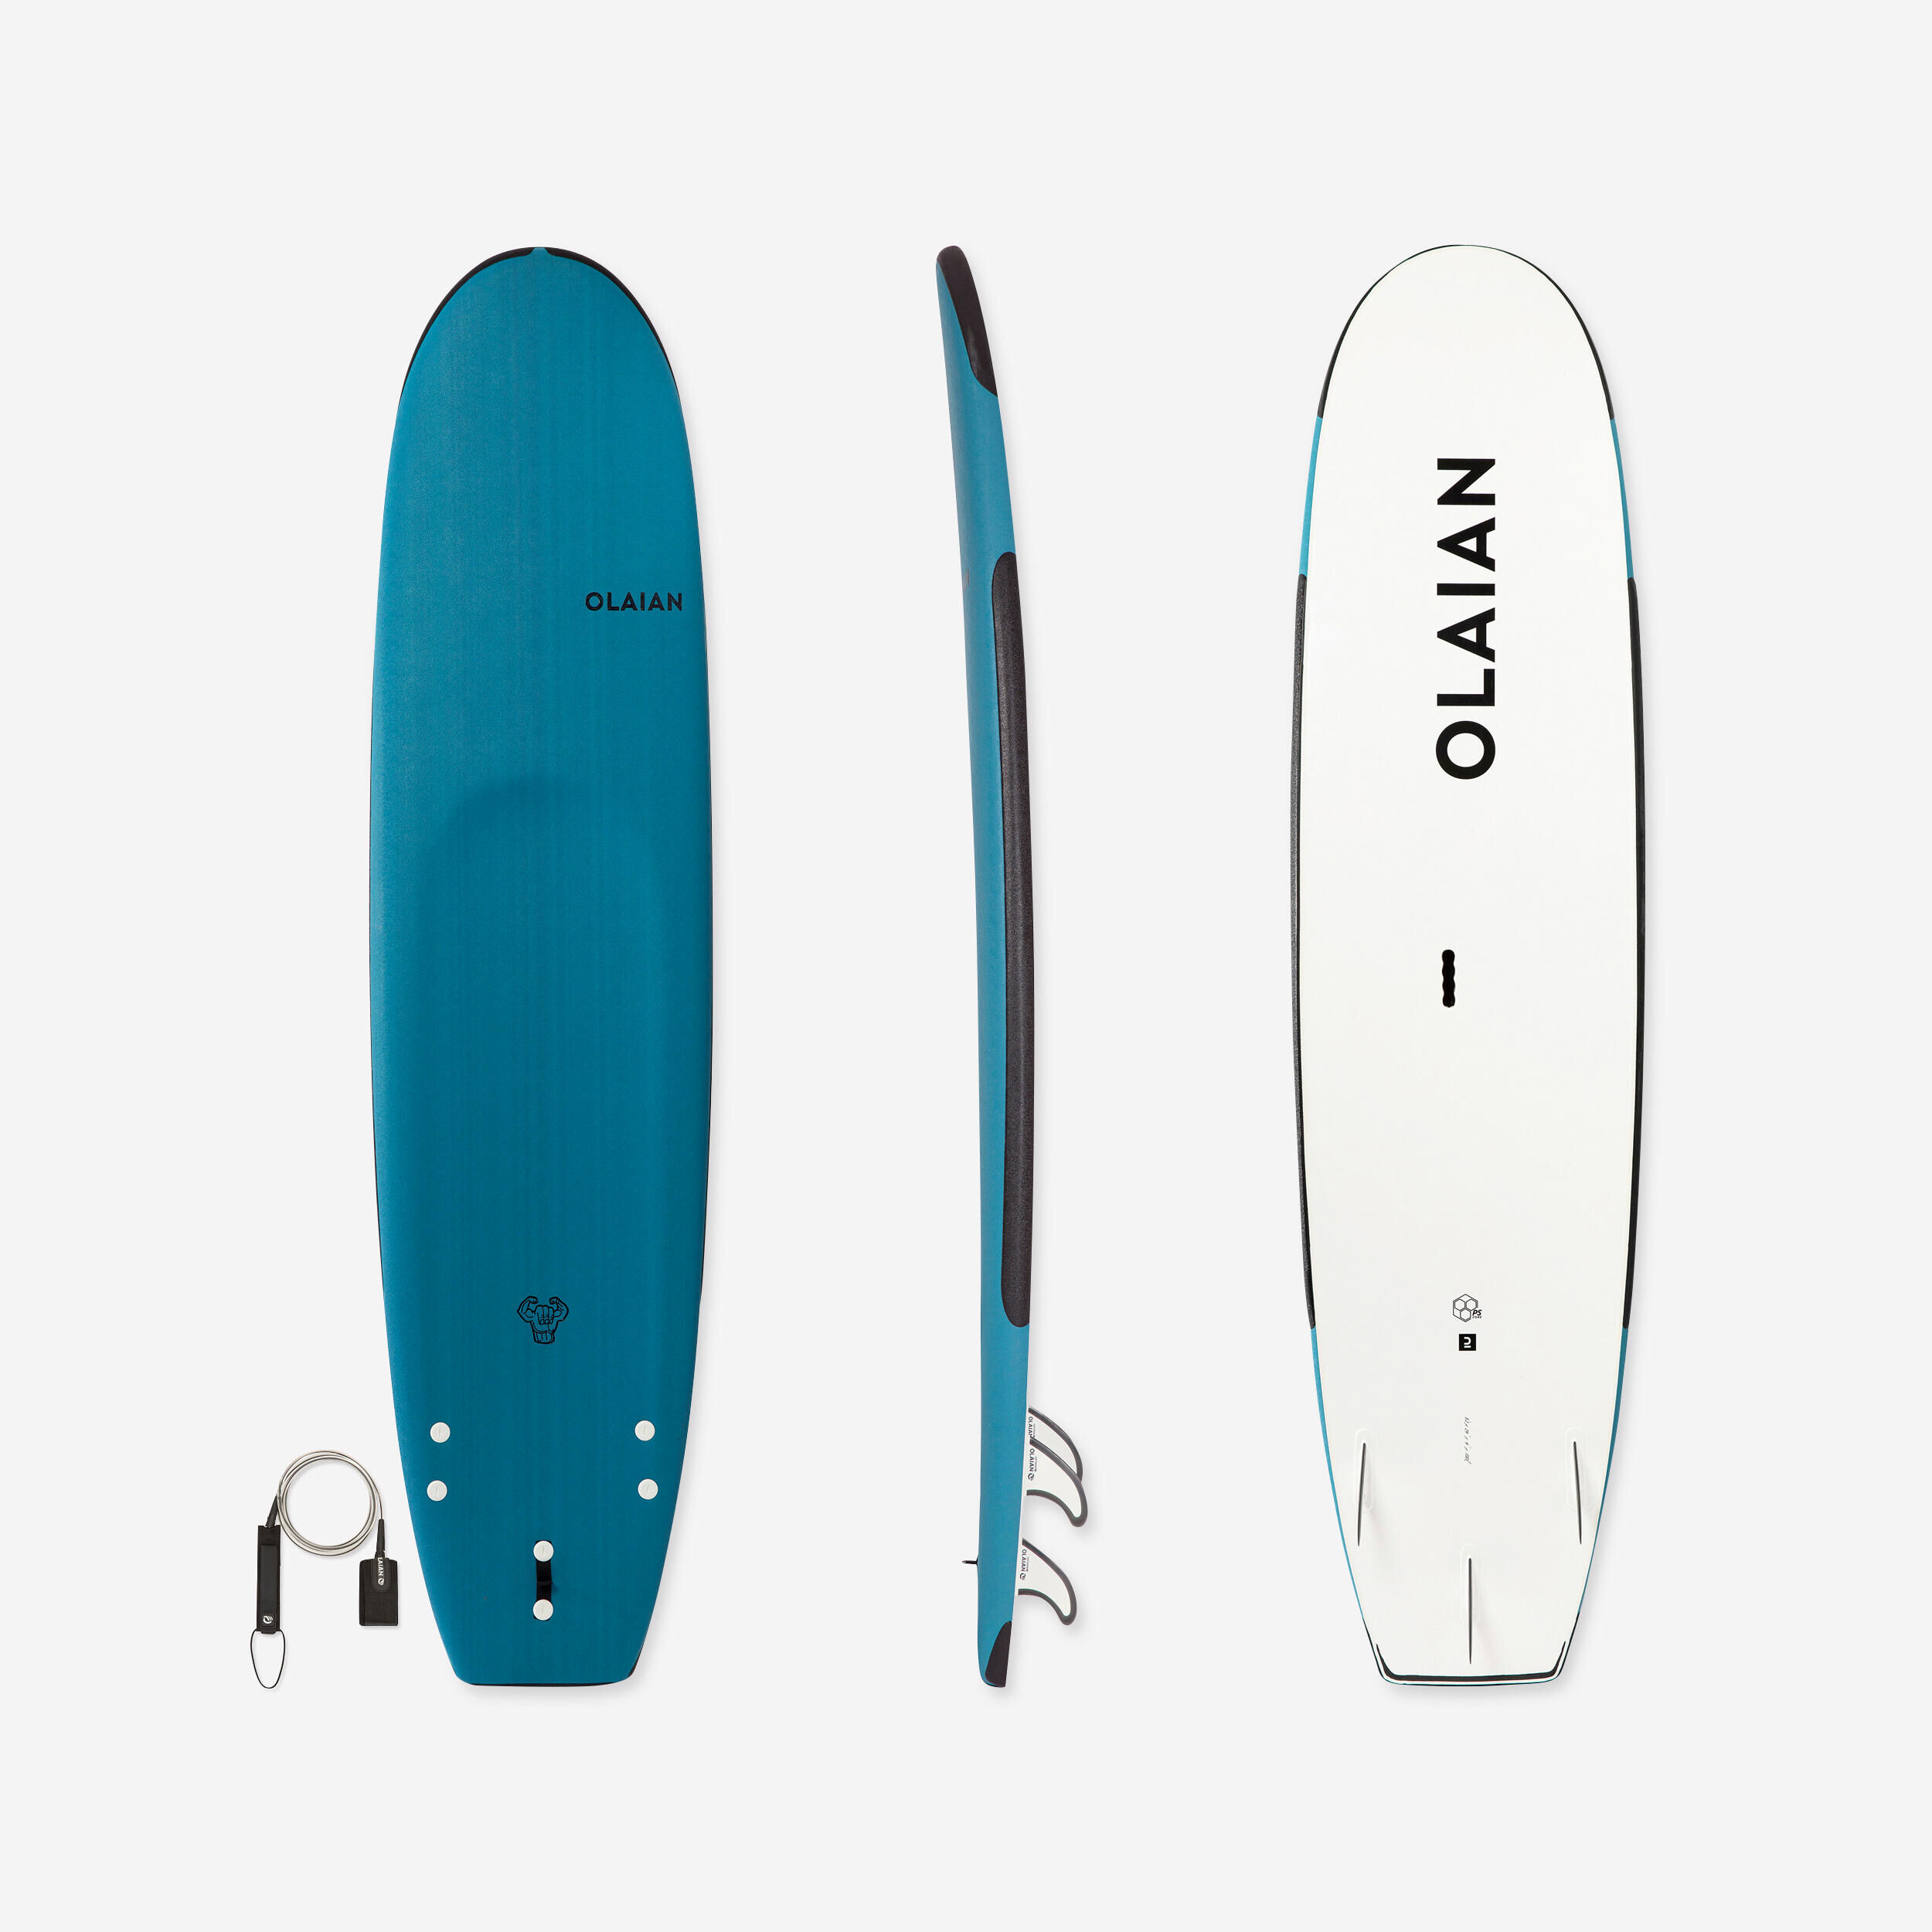 OLAIAN FOAM SURFBOARD 100 Reinforced 8'2" 100 L + Leash